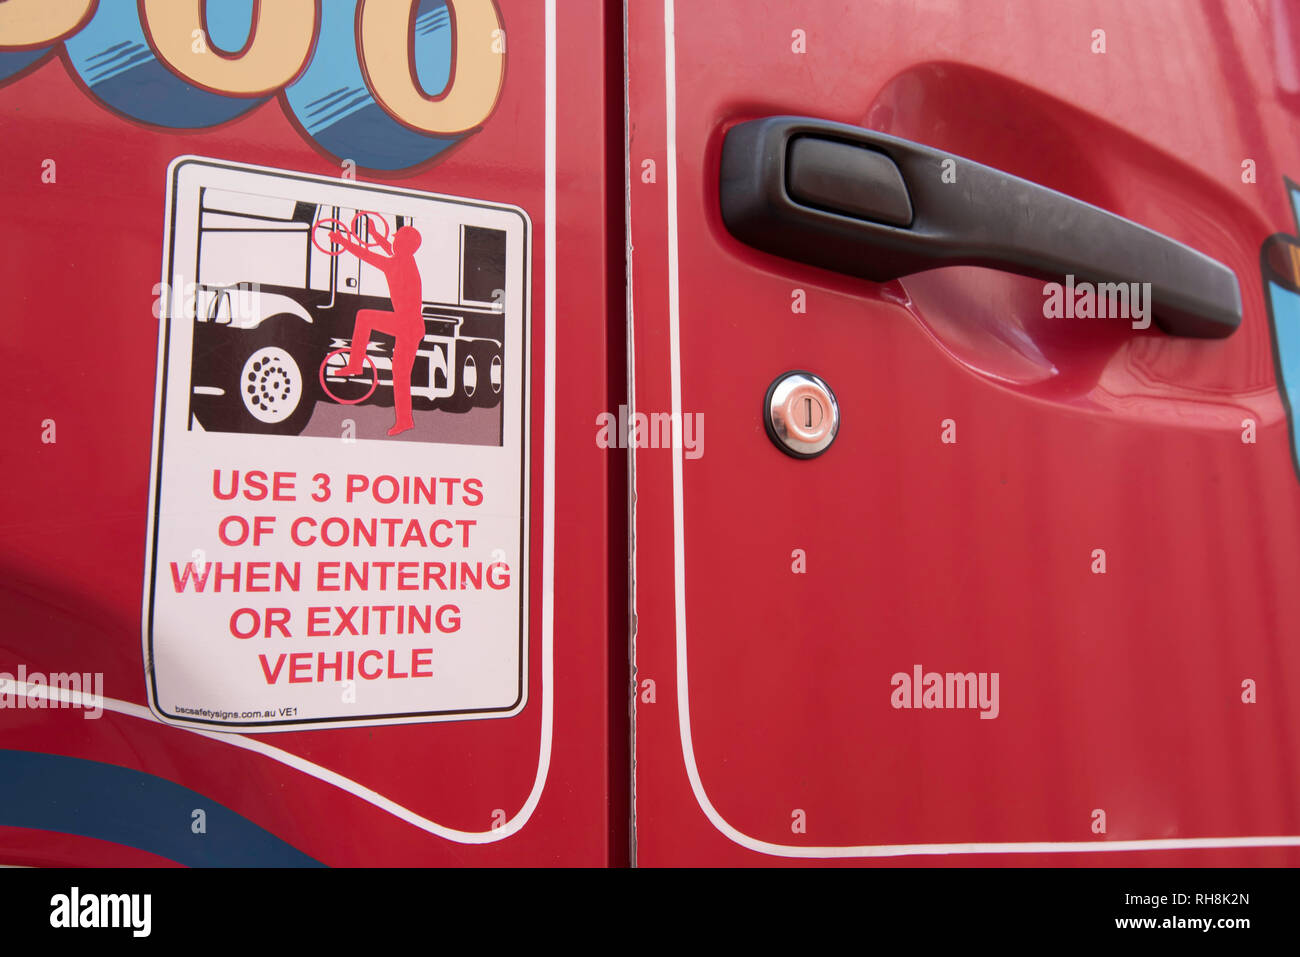 6 accesorios para camiones prohibidos que comprometen la seguridad –